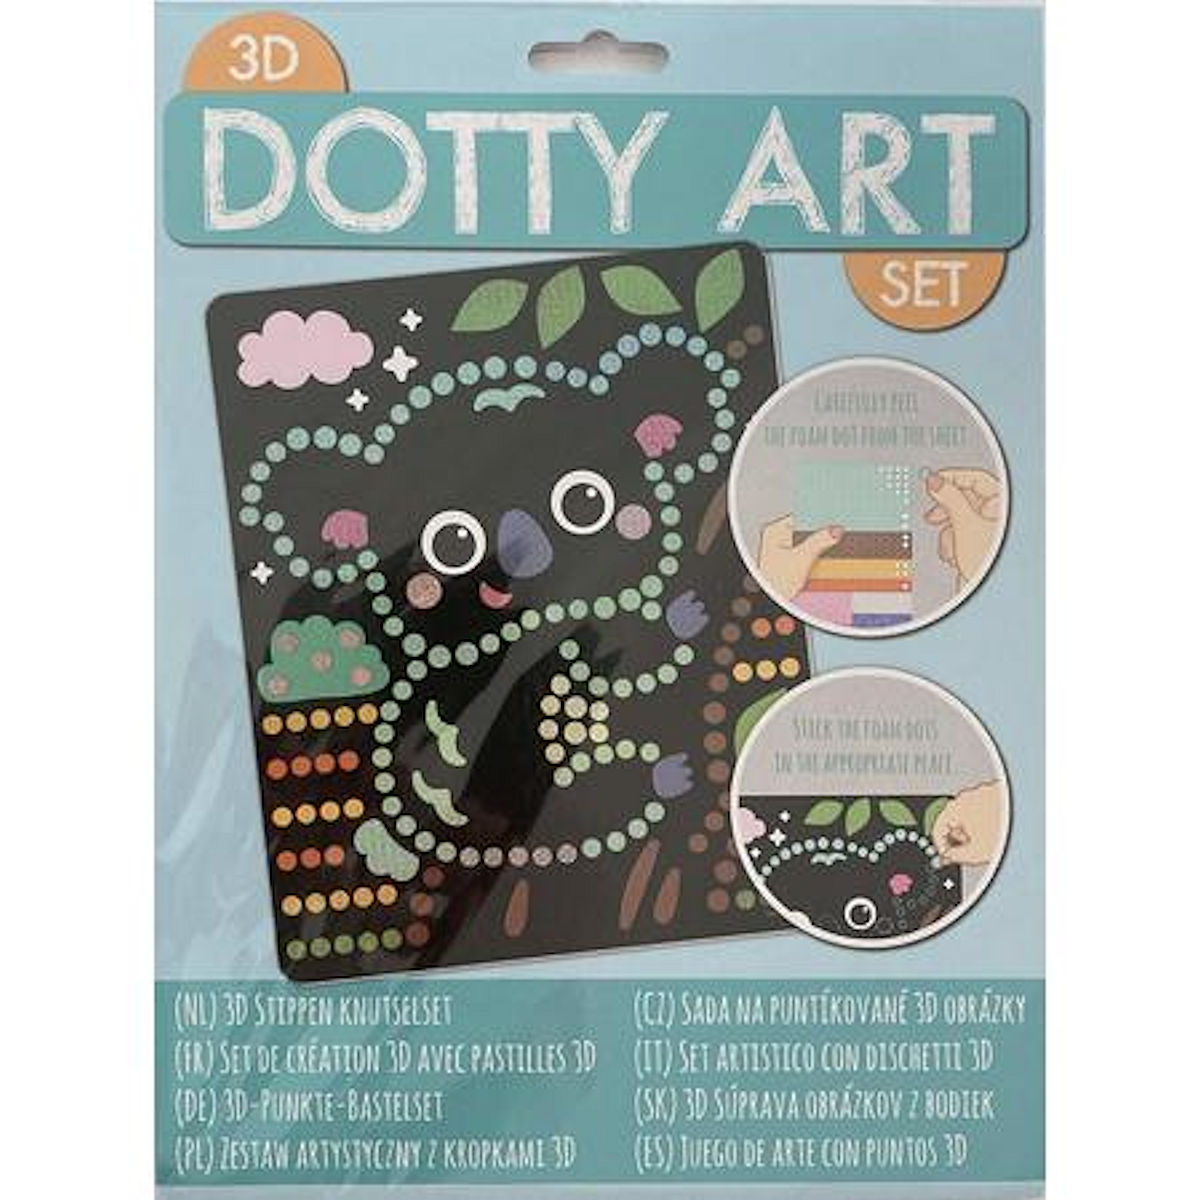 3D DOTTY ART ASS - 8711851616006 - 525684